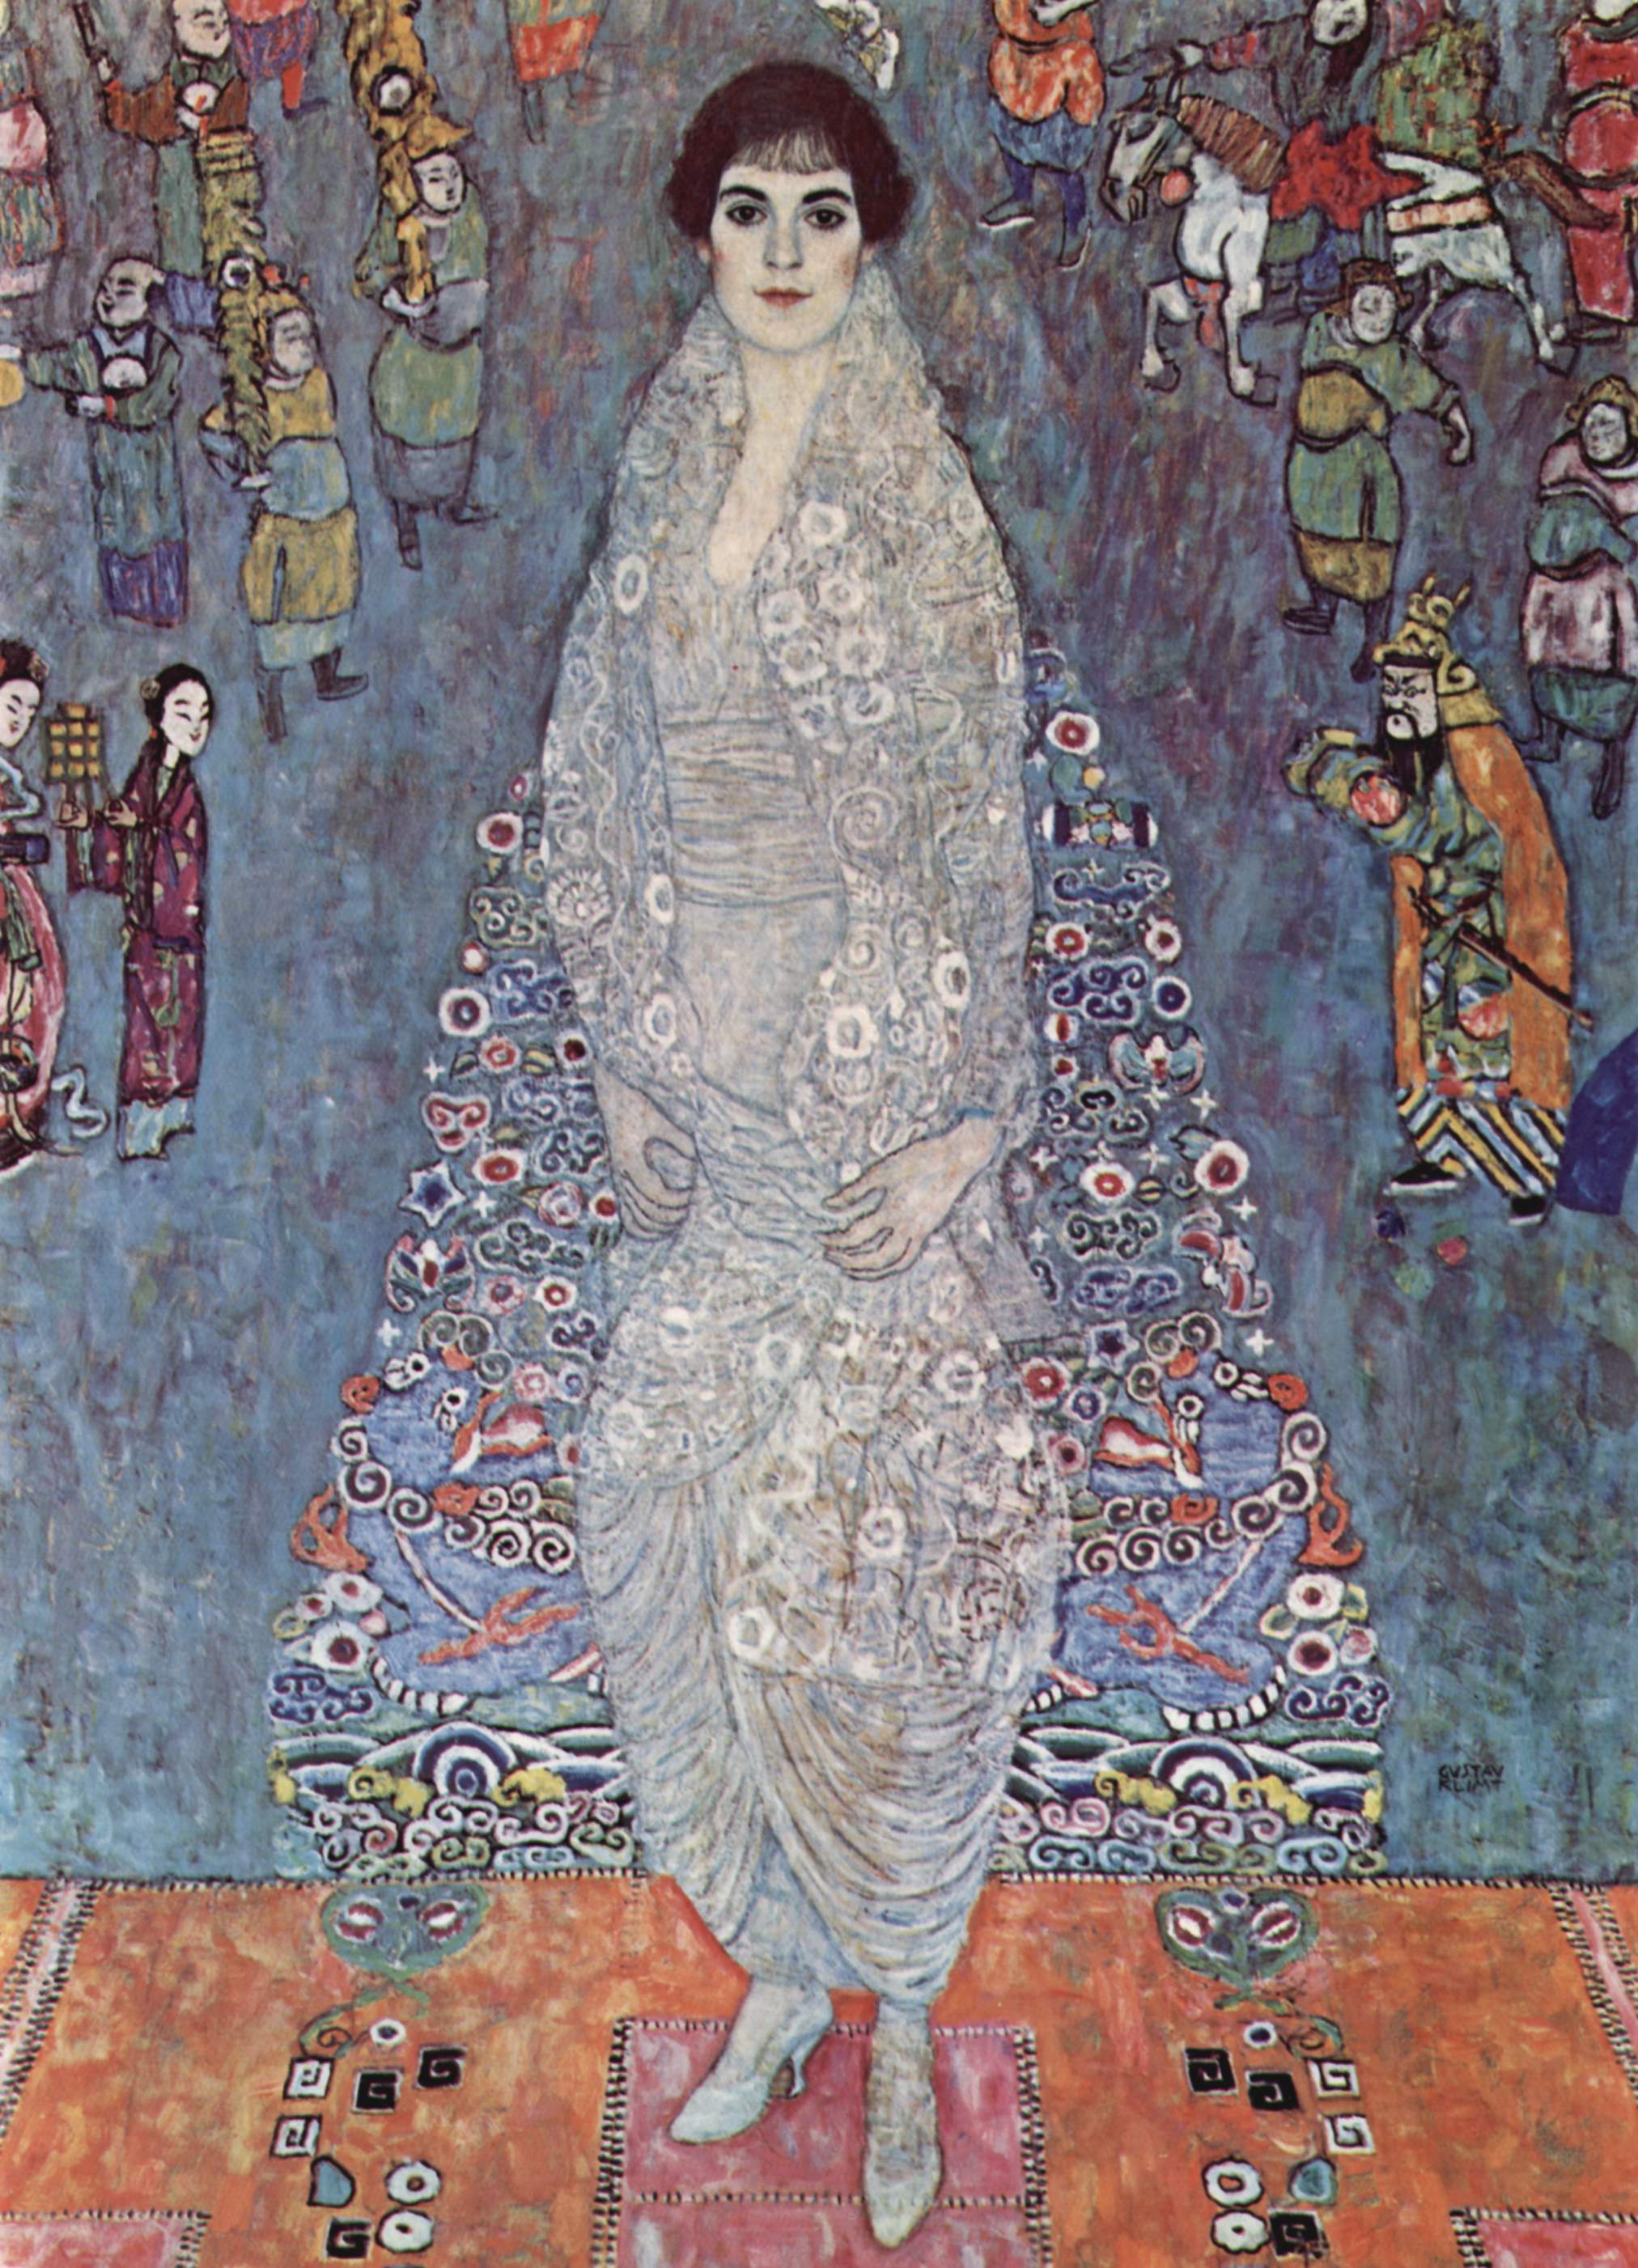 伊丽莎白·巴乔芬-埃希特男爵夫人 by 古斯塔夫· 克林姆特画 - 1914-1916 - 180 × 126 cm 